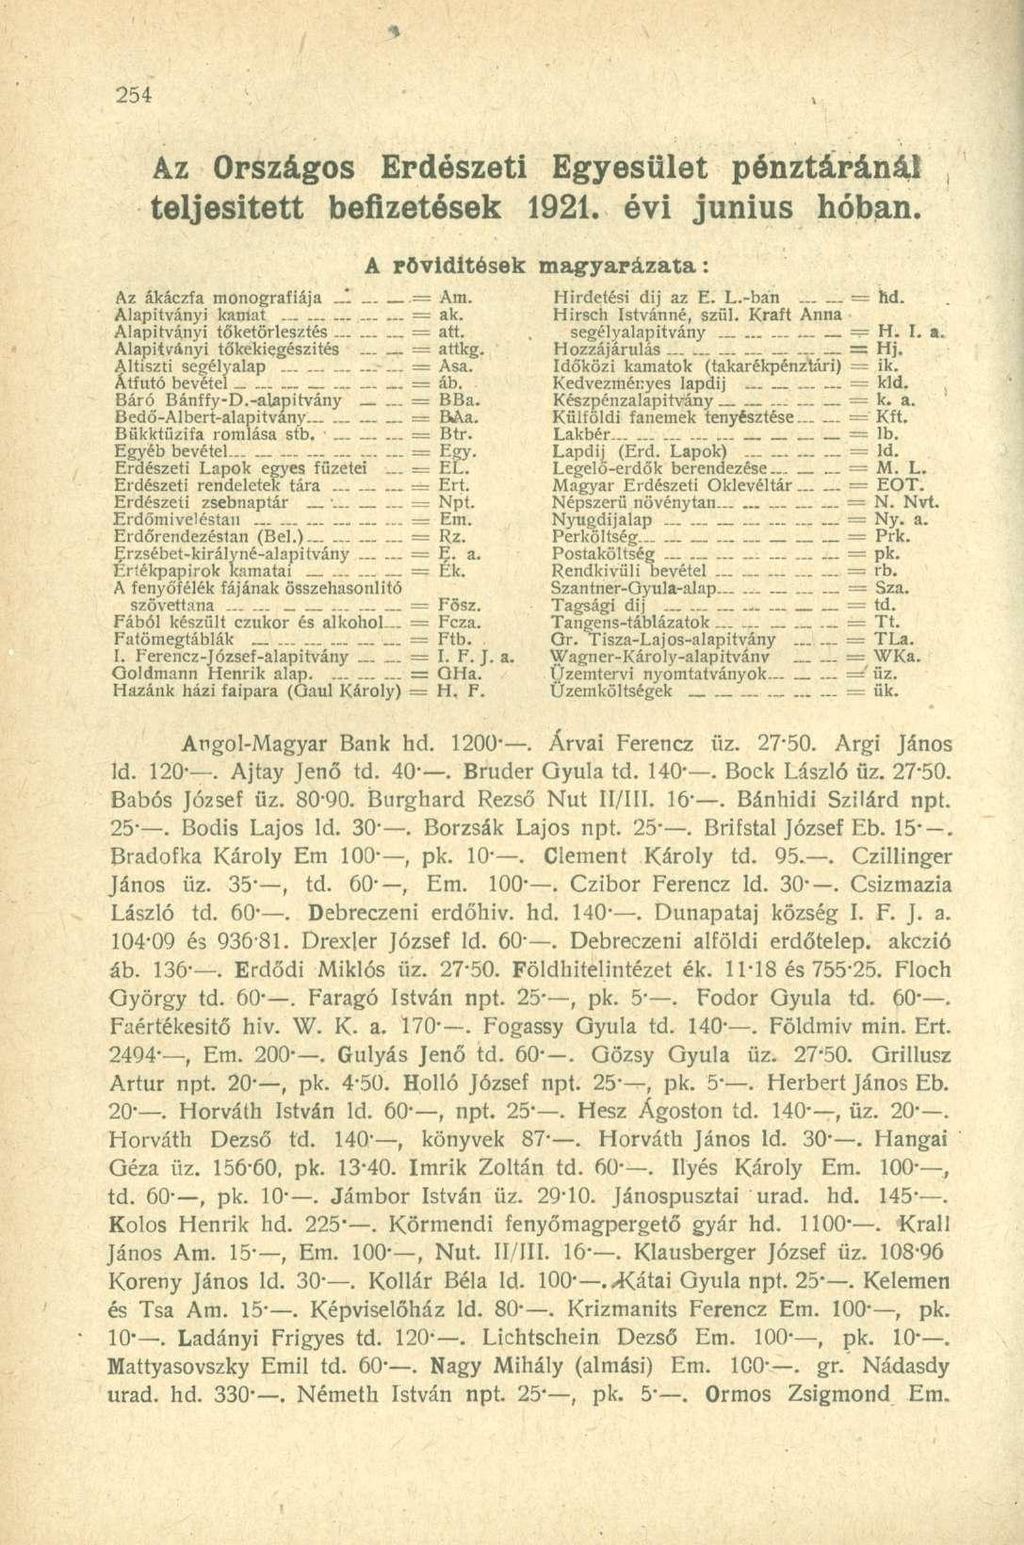 Az Országos Erdészeti Egyesület pénztáránál teljesített befizetések 1921. évi június hóban. Az ákáczfa monográfiája = Ara. Alapítványi kamat - = ak. Alapítványi töketörlesztés = att.